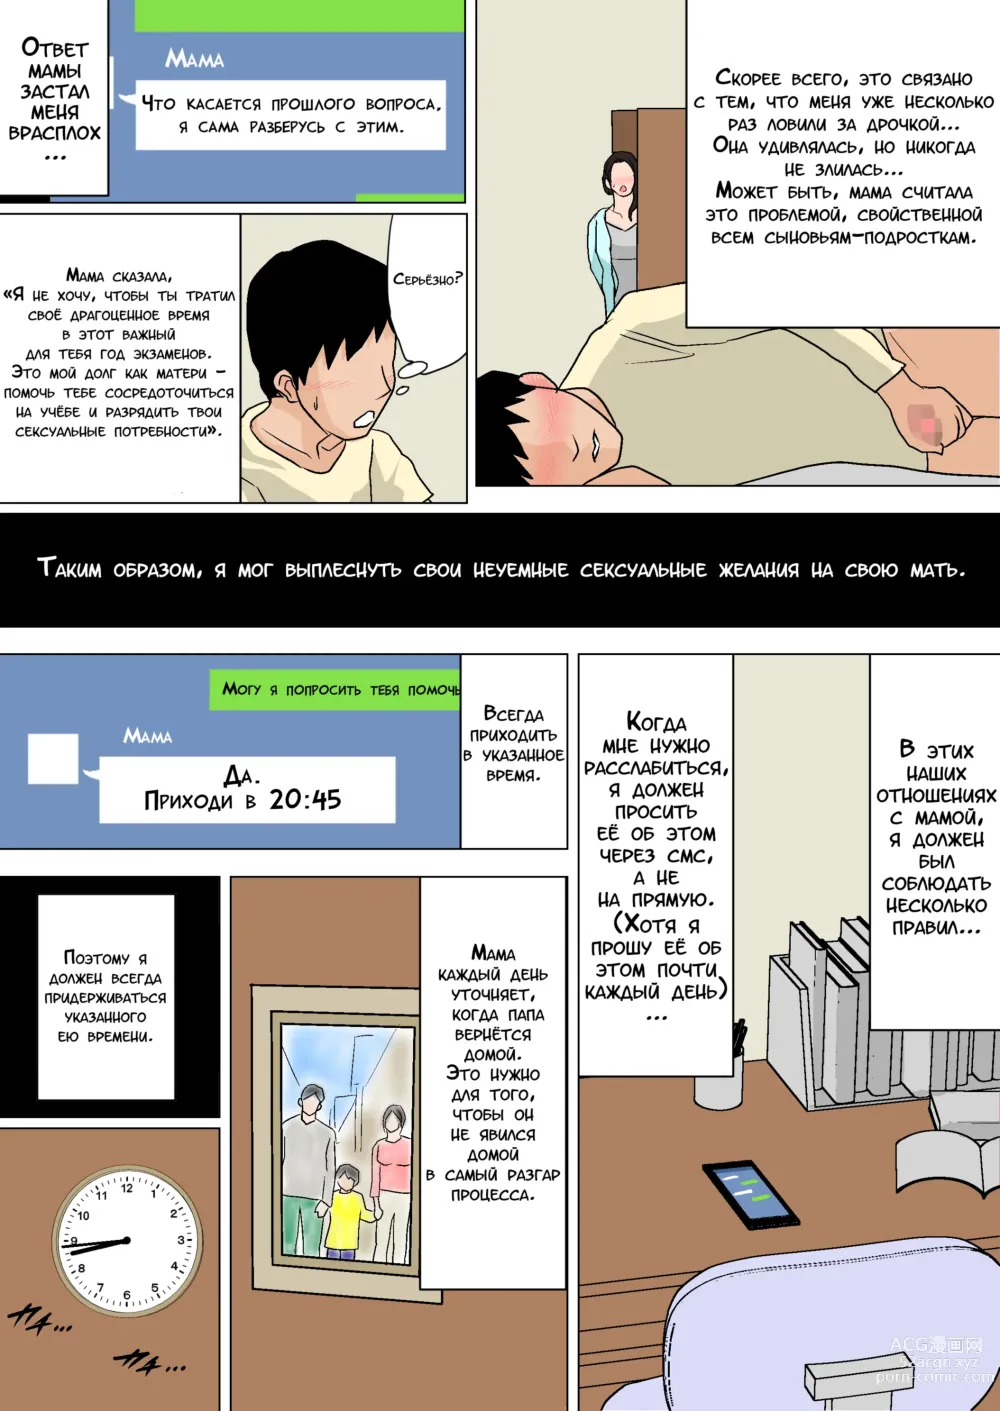 Page 6 of doujinshi Ежедневное снятие сексуального напряжения вместе с мамой!